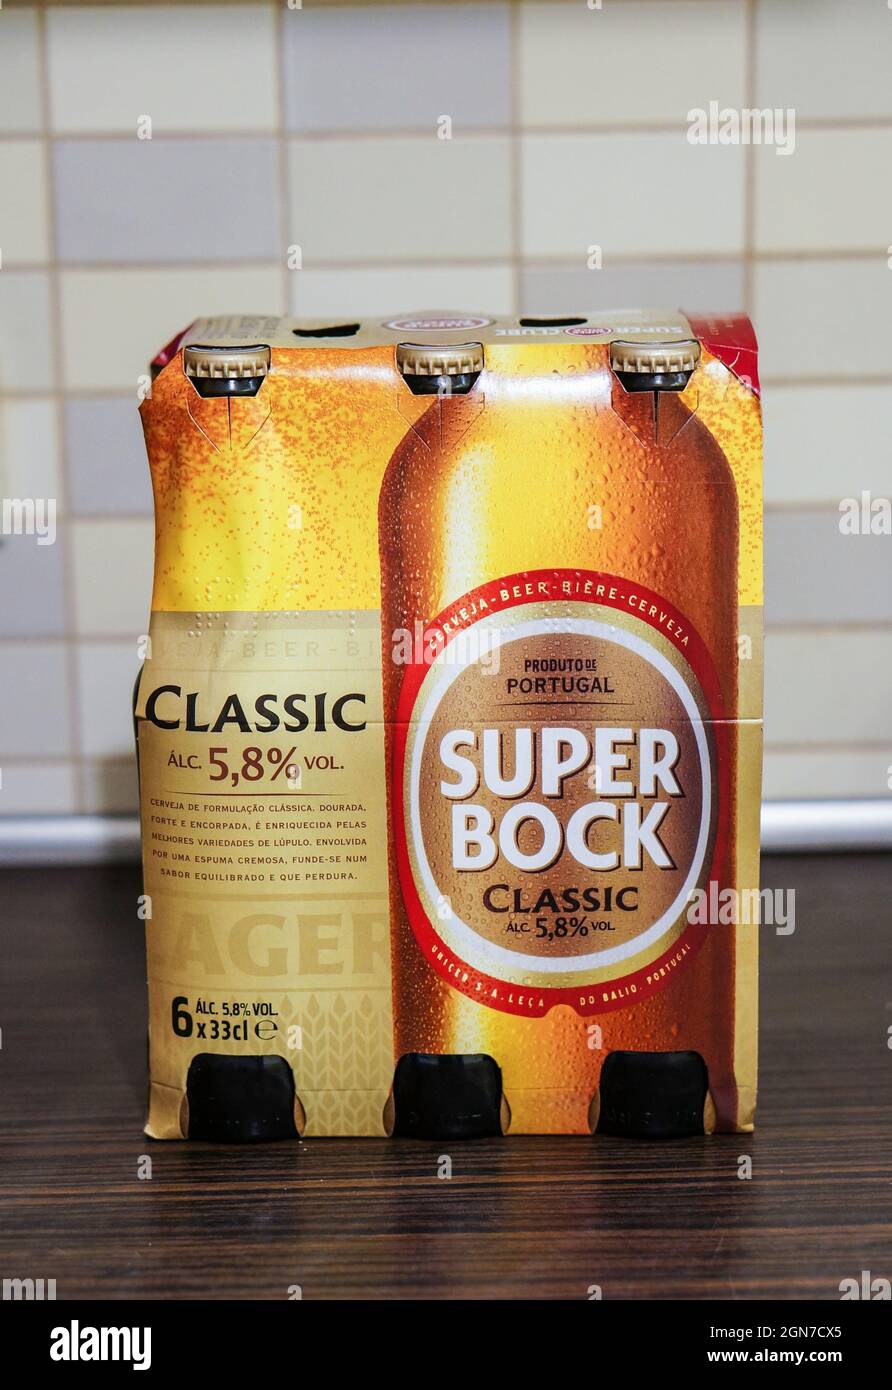 POZNAN, POLAND - Jun 23, 2016: A Super Bock Classic six pack beer